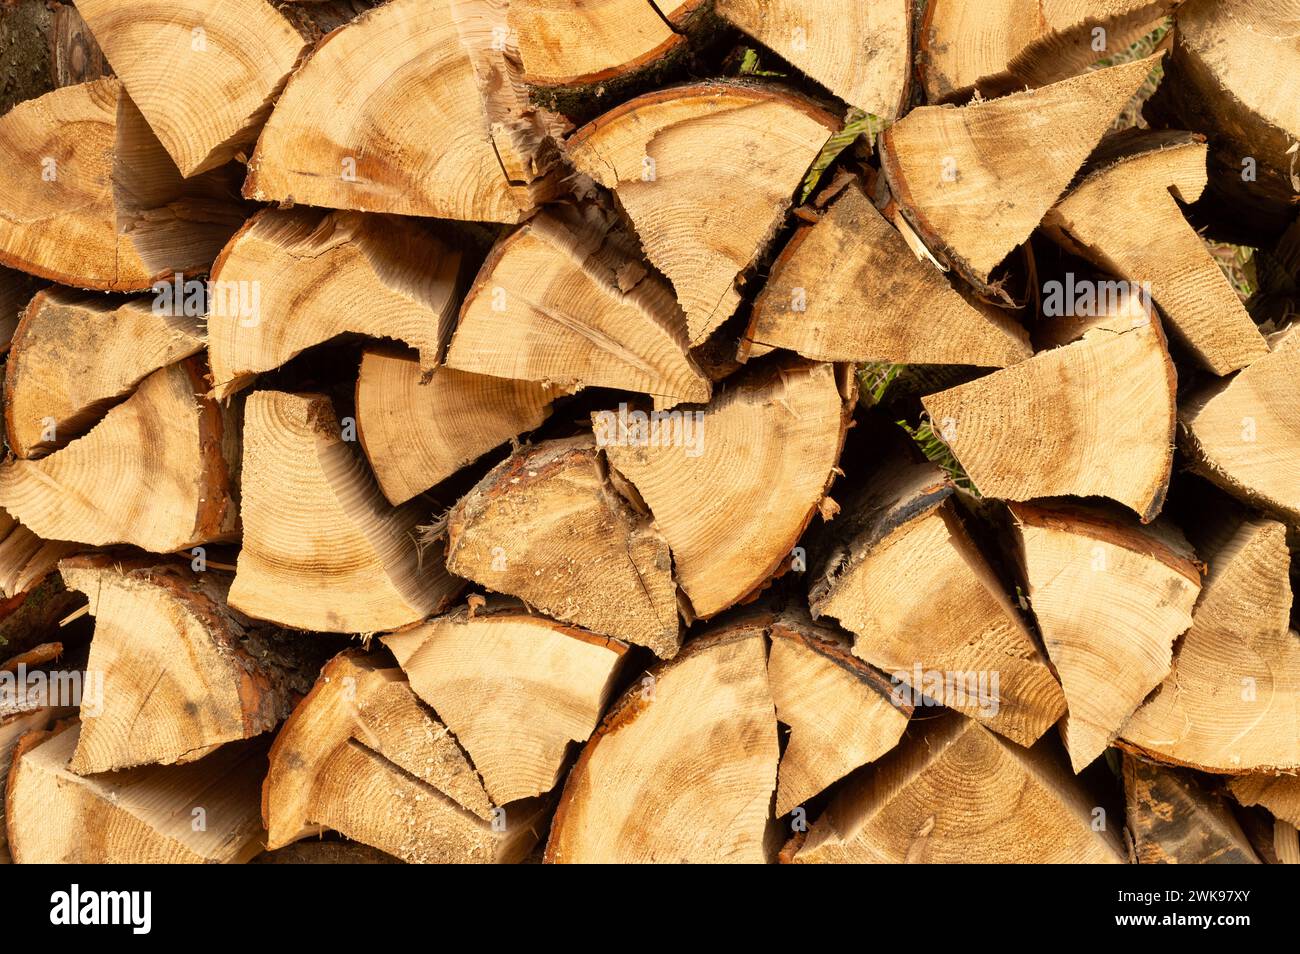 Holzhaufen. Frisch geschnittene Holzscheite im Wald gestapelt. Brennholz, Umweltschäden, ökologische Probleme, Entwaldung, alternative Energie, Lumbe Stockfoto